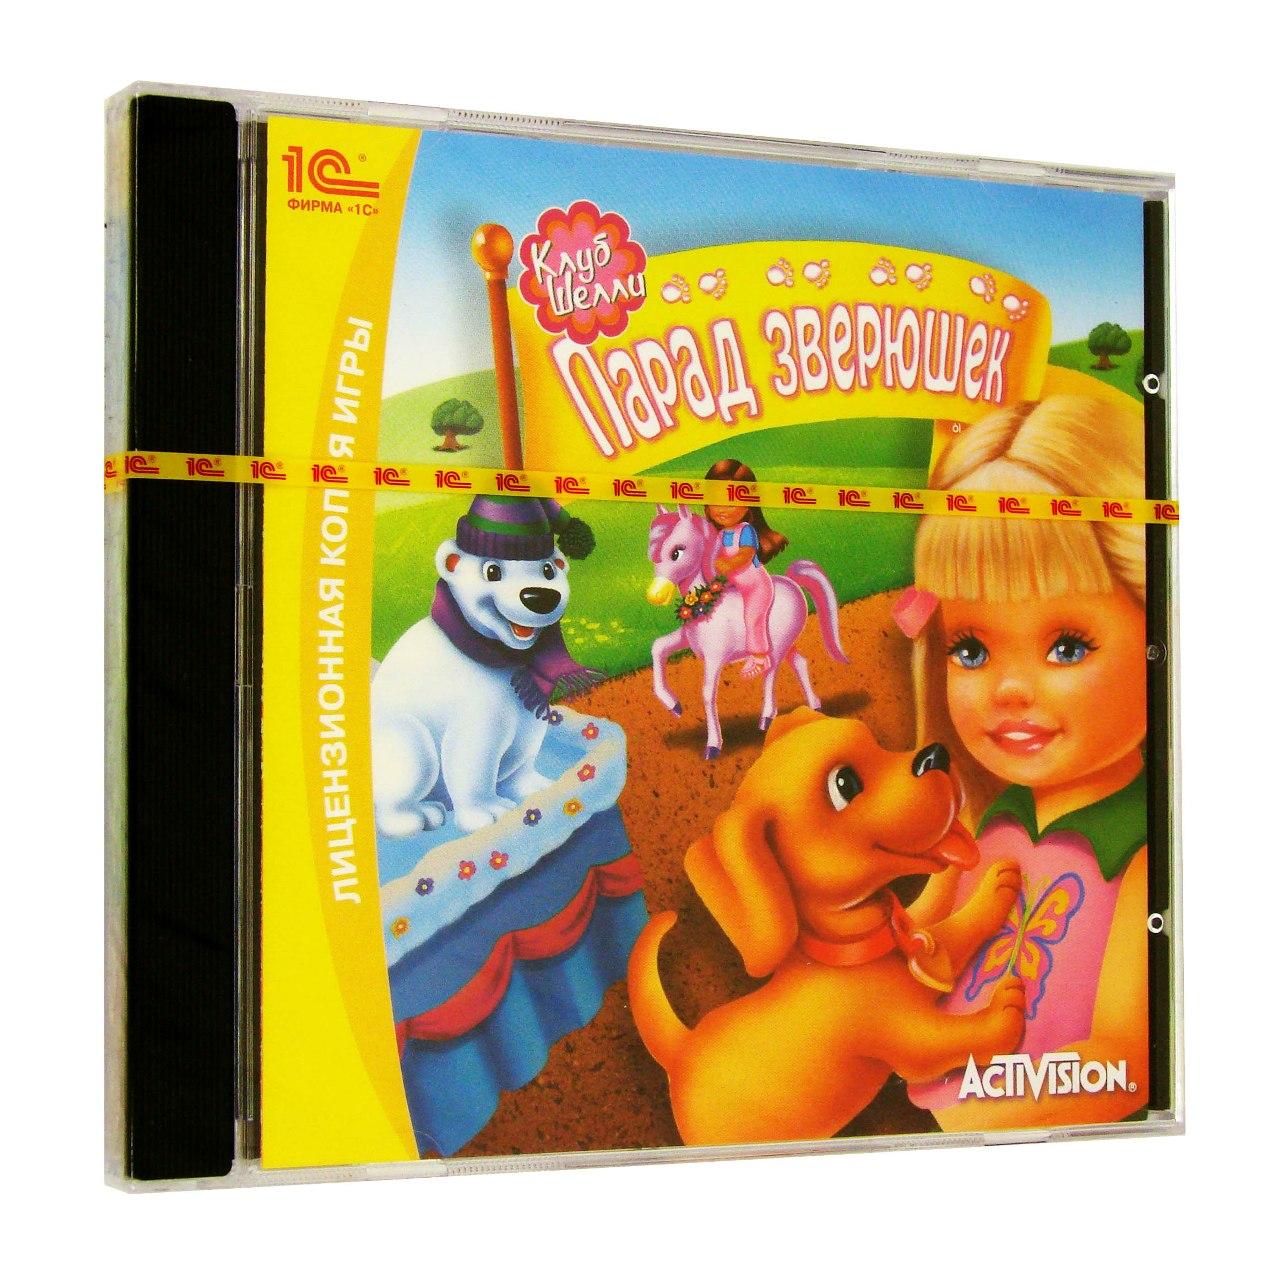 Компьютерный компакт-диск Клуб Шелли: Парад зверушек. (ПК), фирма "1С", 1CD